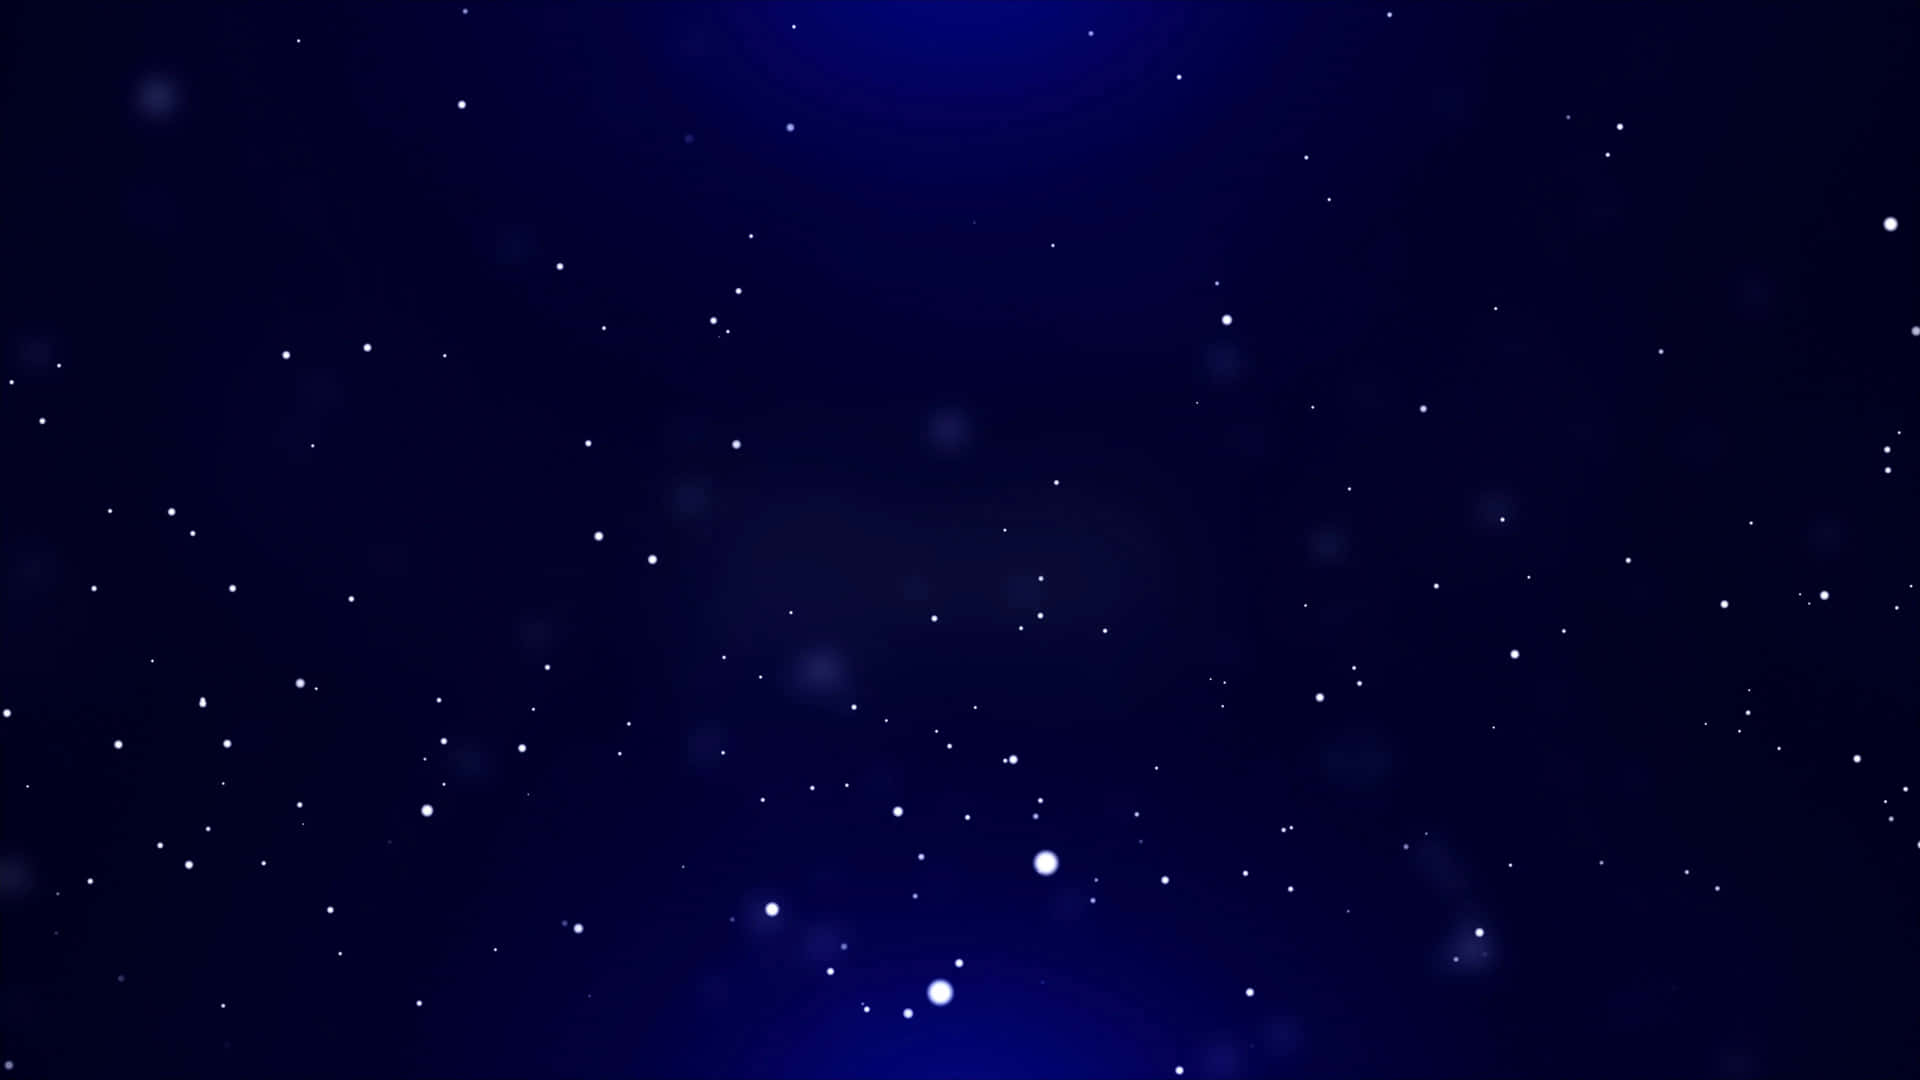 Cielonocturno Estrellado Sobre Fondo Azul Marino.